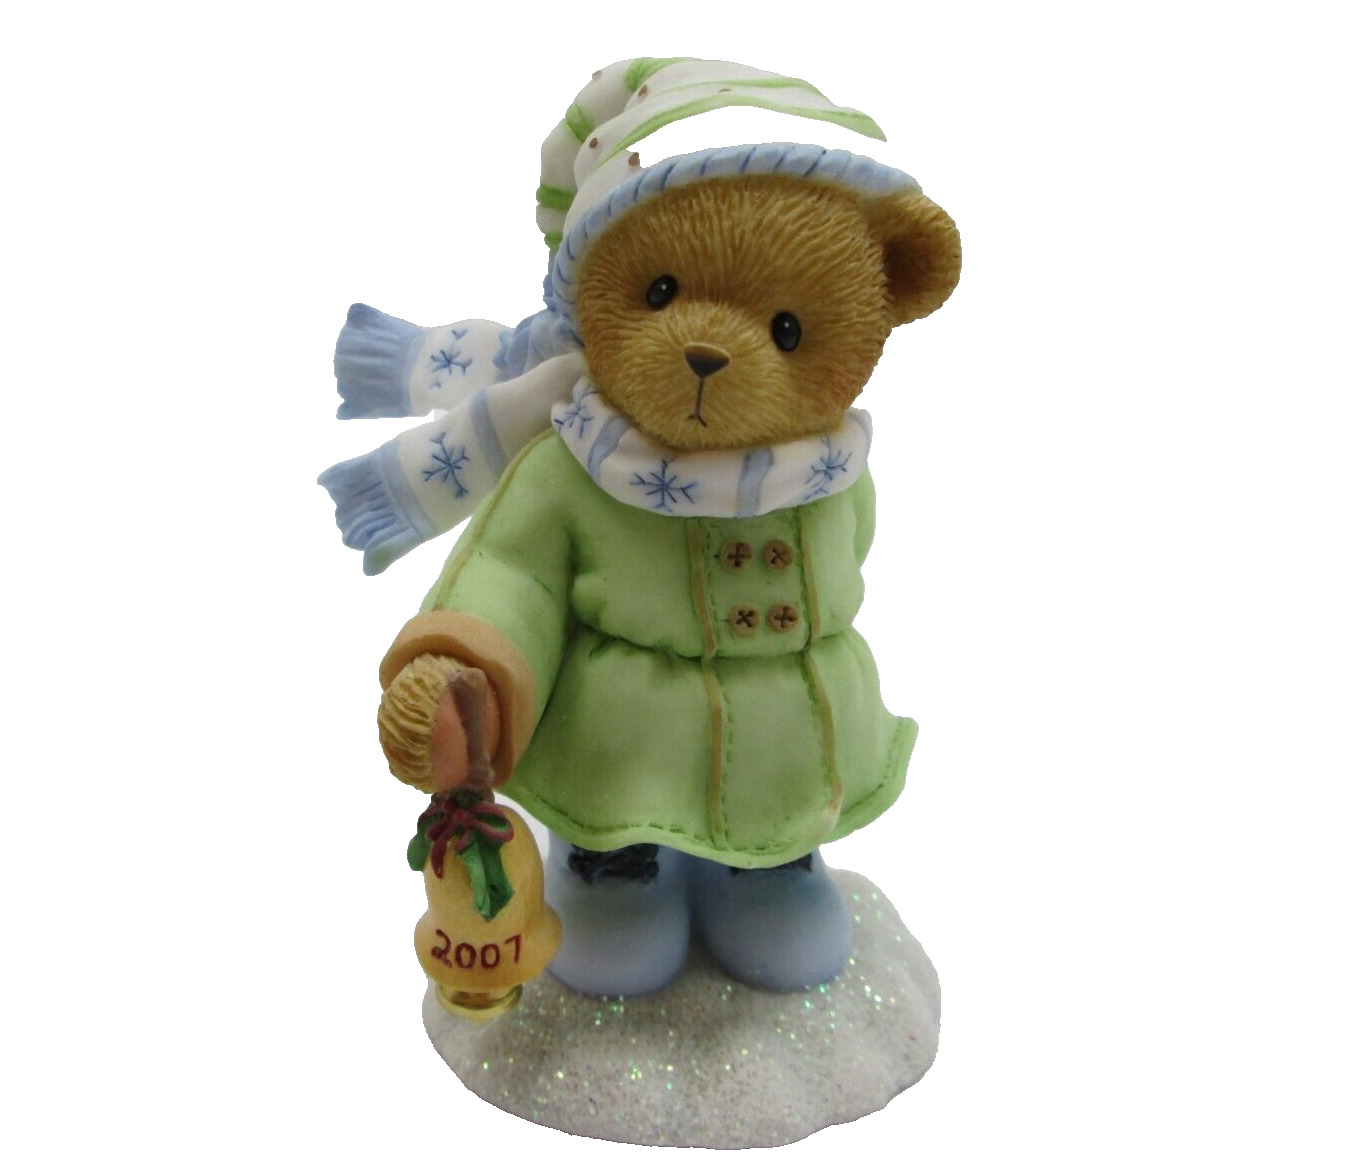 Cherished Teddies 2007 Bear Figurine Rosa Lee # 4008149